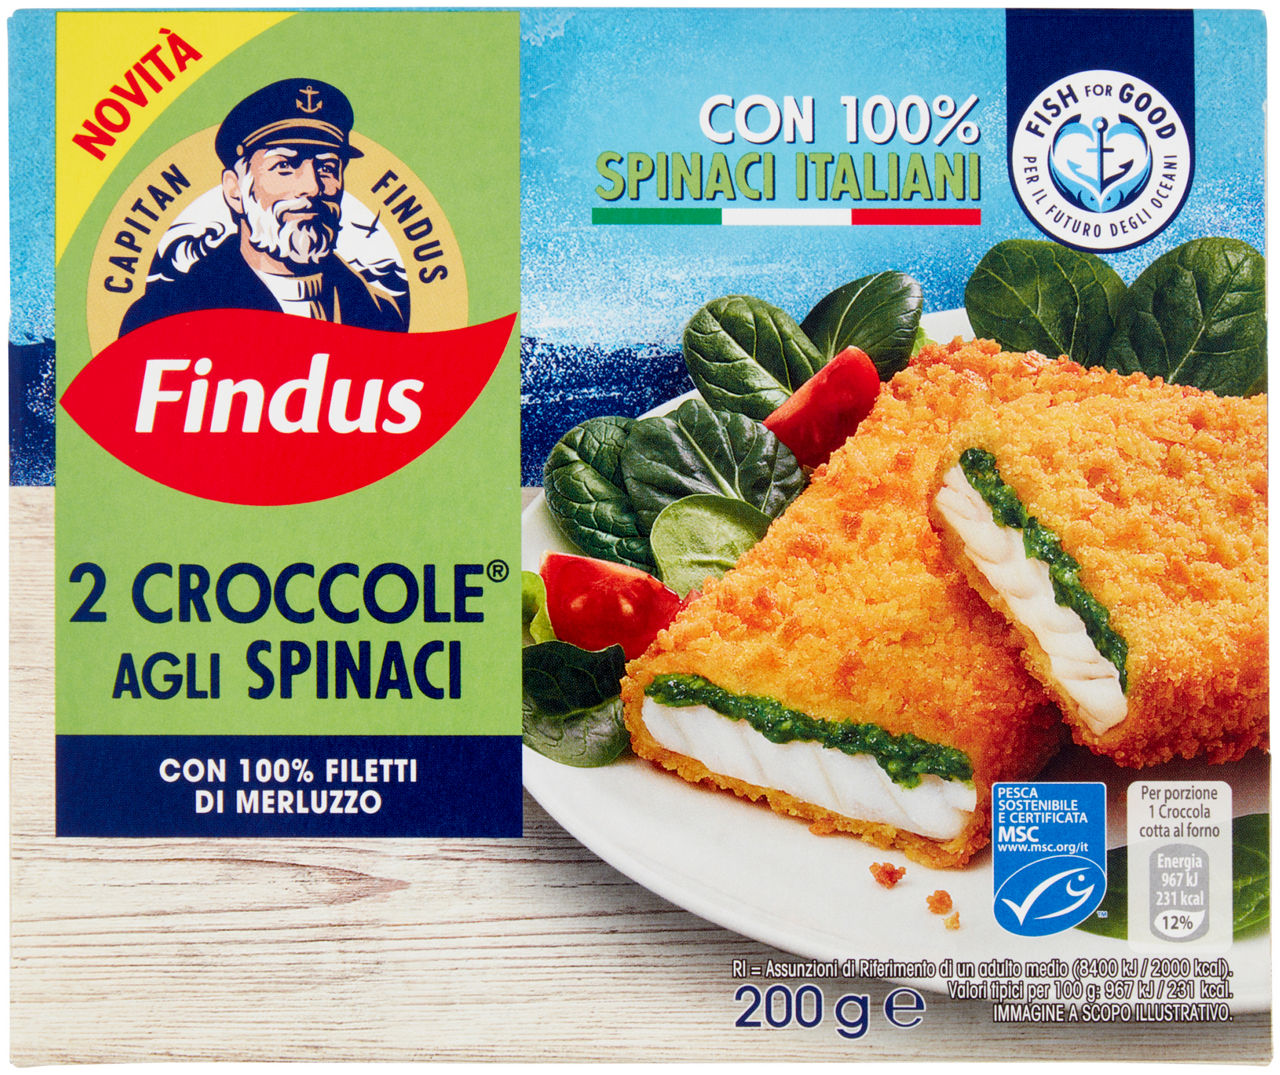 Croccole agli spinaci con merluzzo gr 200 - 0